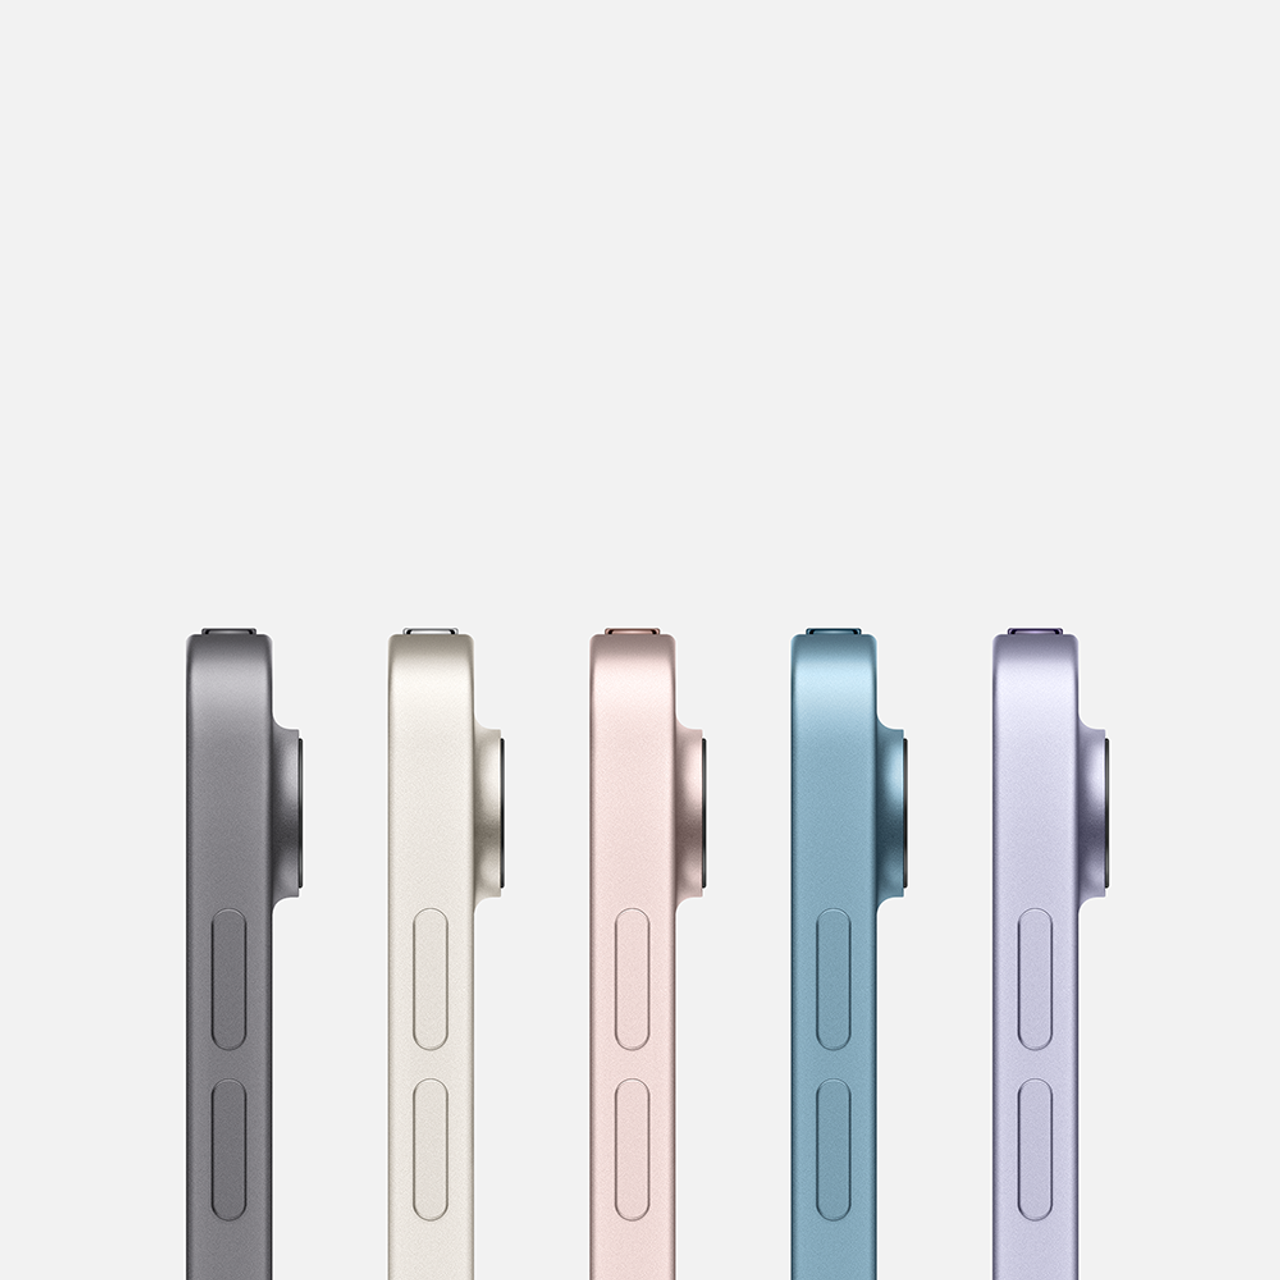 Apple 10.9 iPad Air - (5th Gen) WiFi - 256GB - Pink 